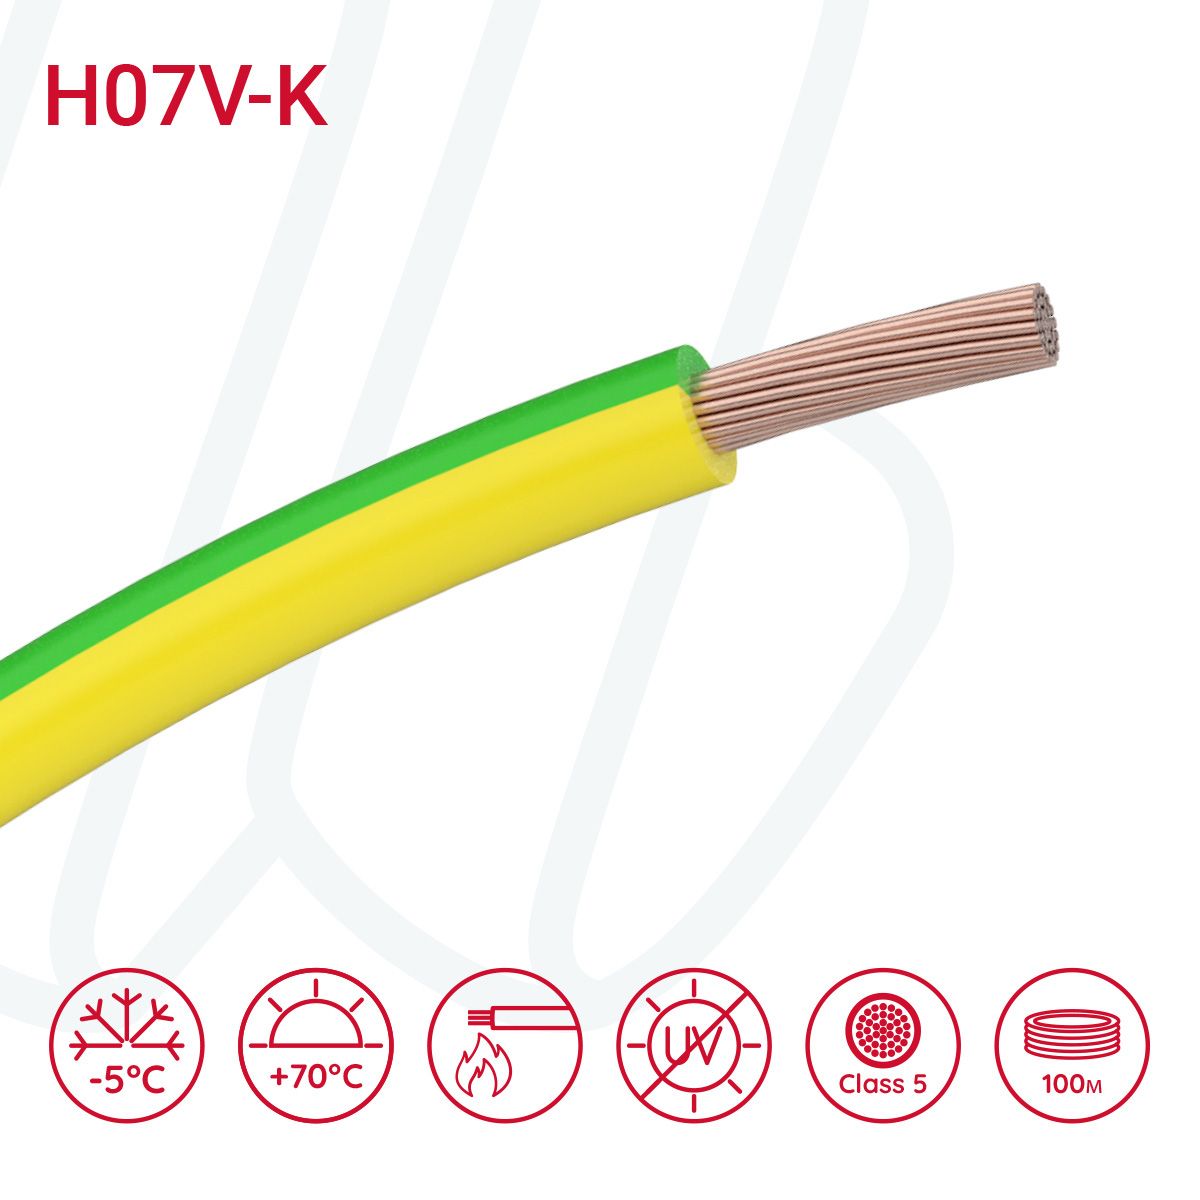 Провід монтажний гнучкий H07V-K 2.5 мм² жовто-зелений, 01, 2.5